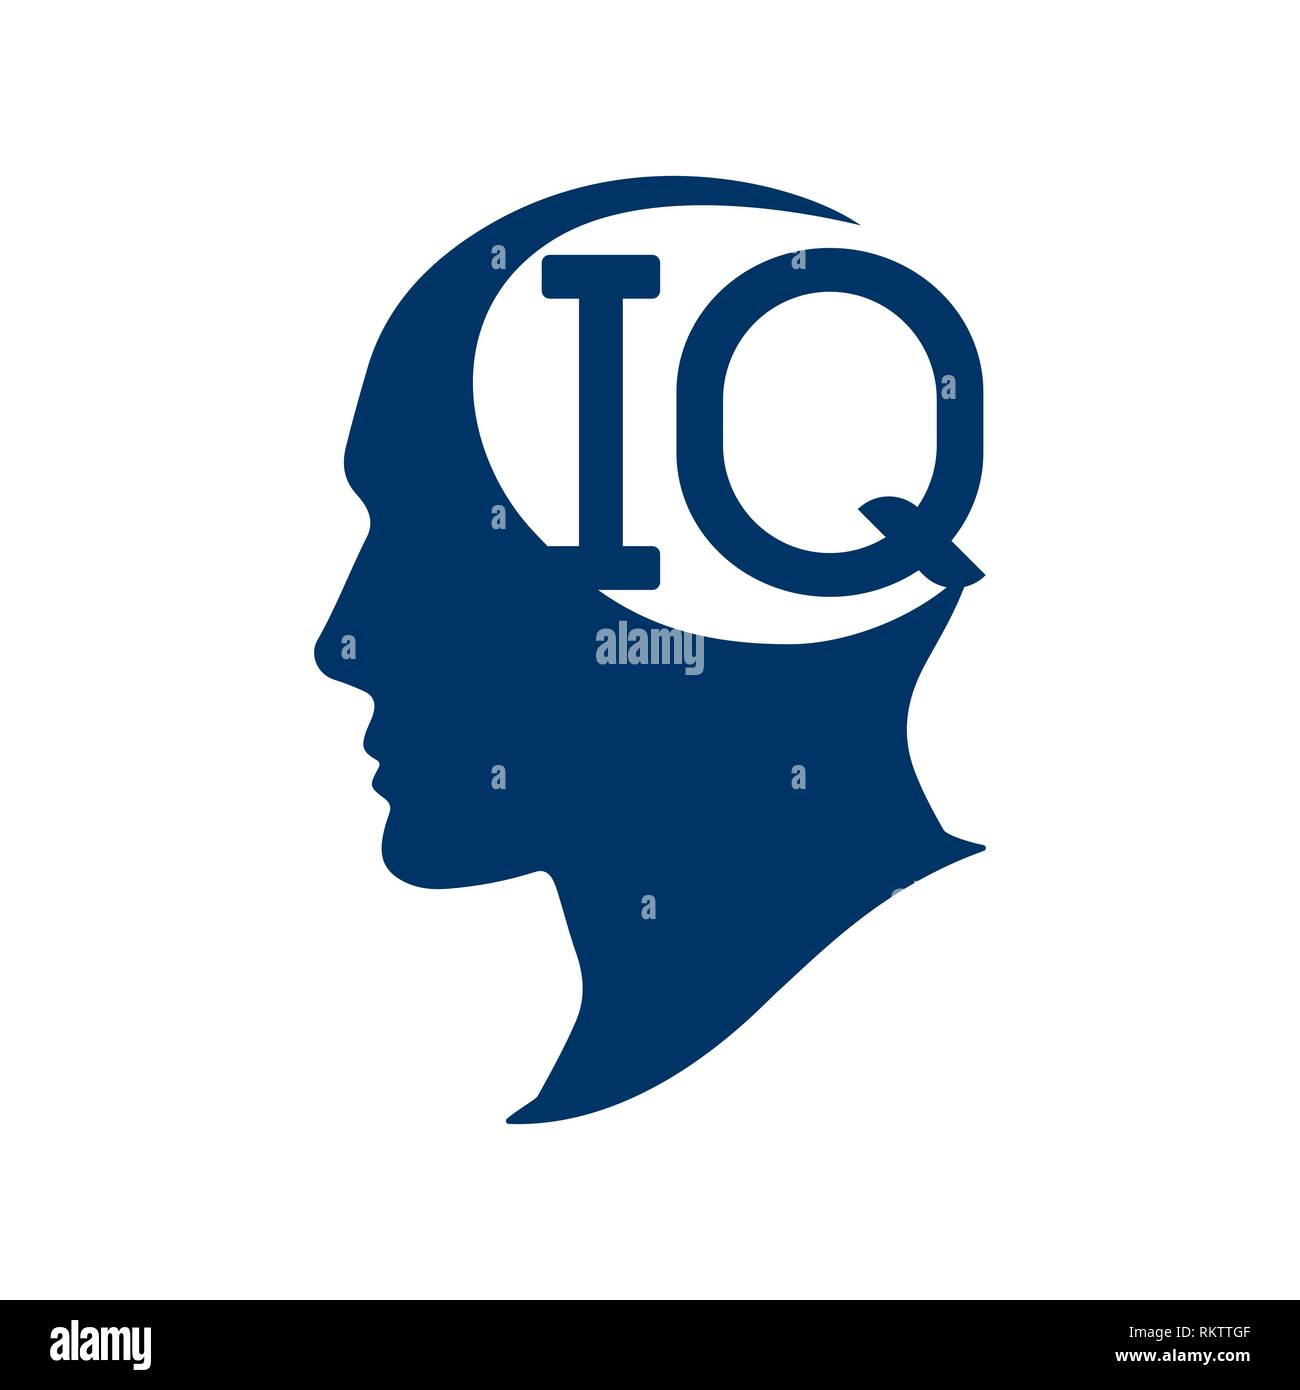 IQ quoziente di intelligenza. Silhouette testa umana con IQ illustrazione vettoriale. Verifica IQ concept. Illustrazione Vettoriale